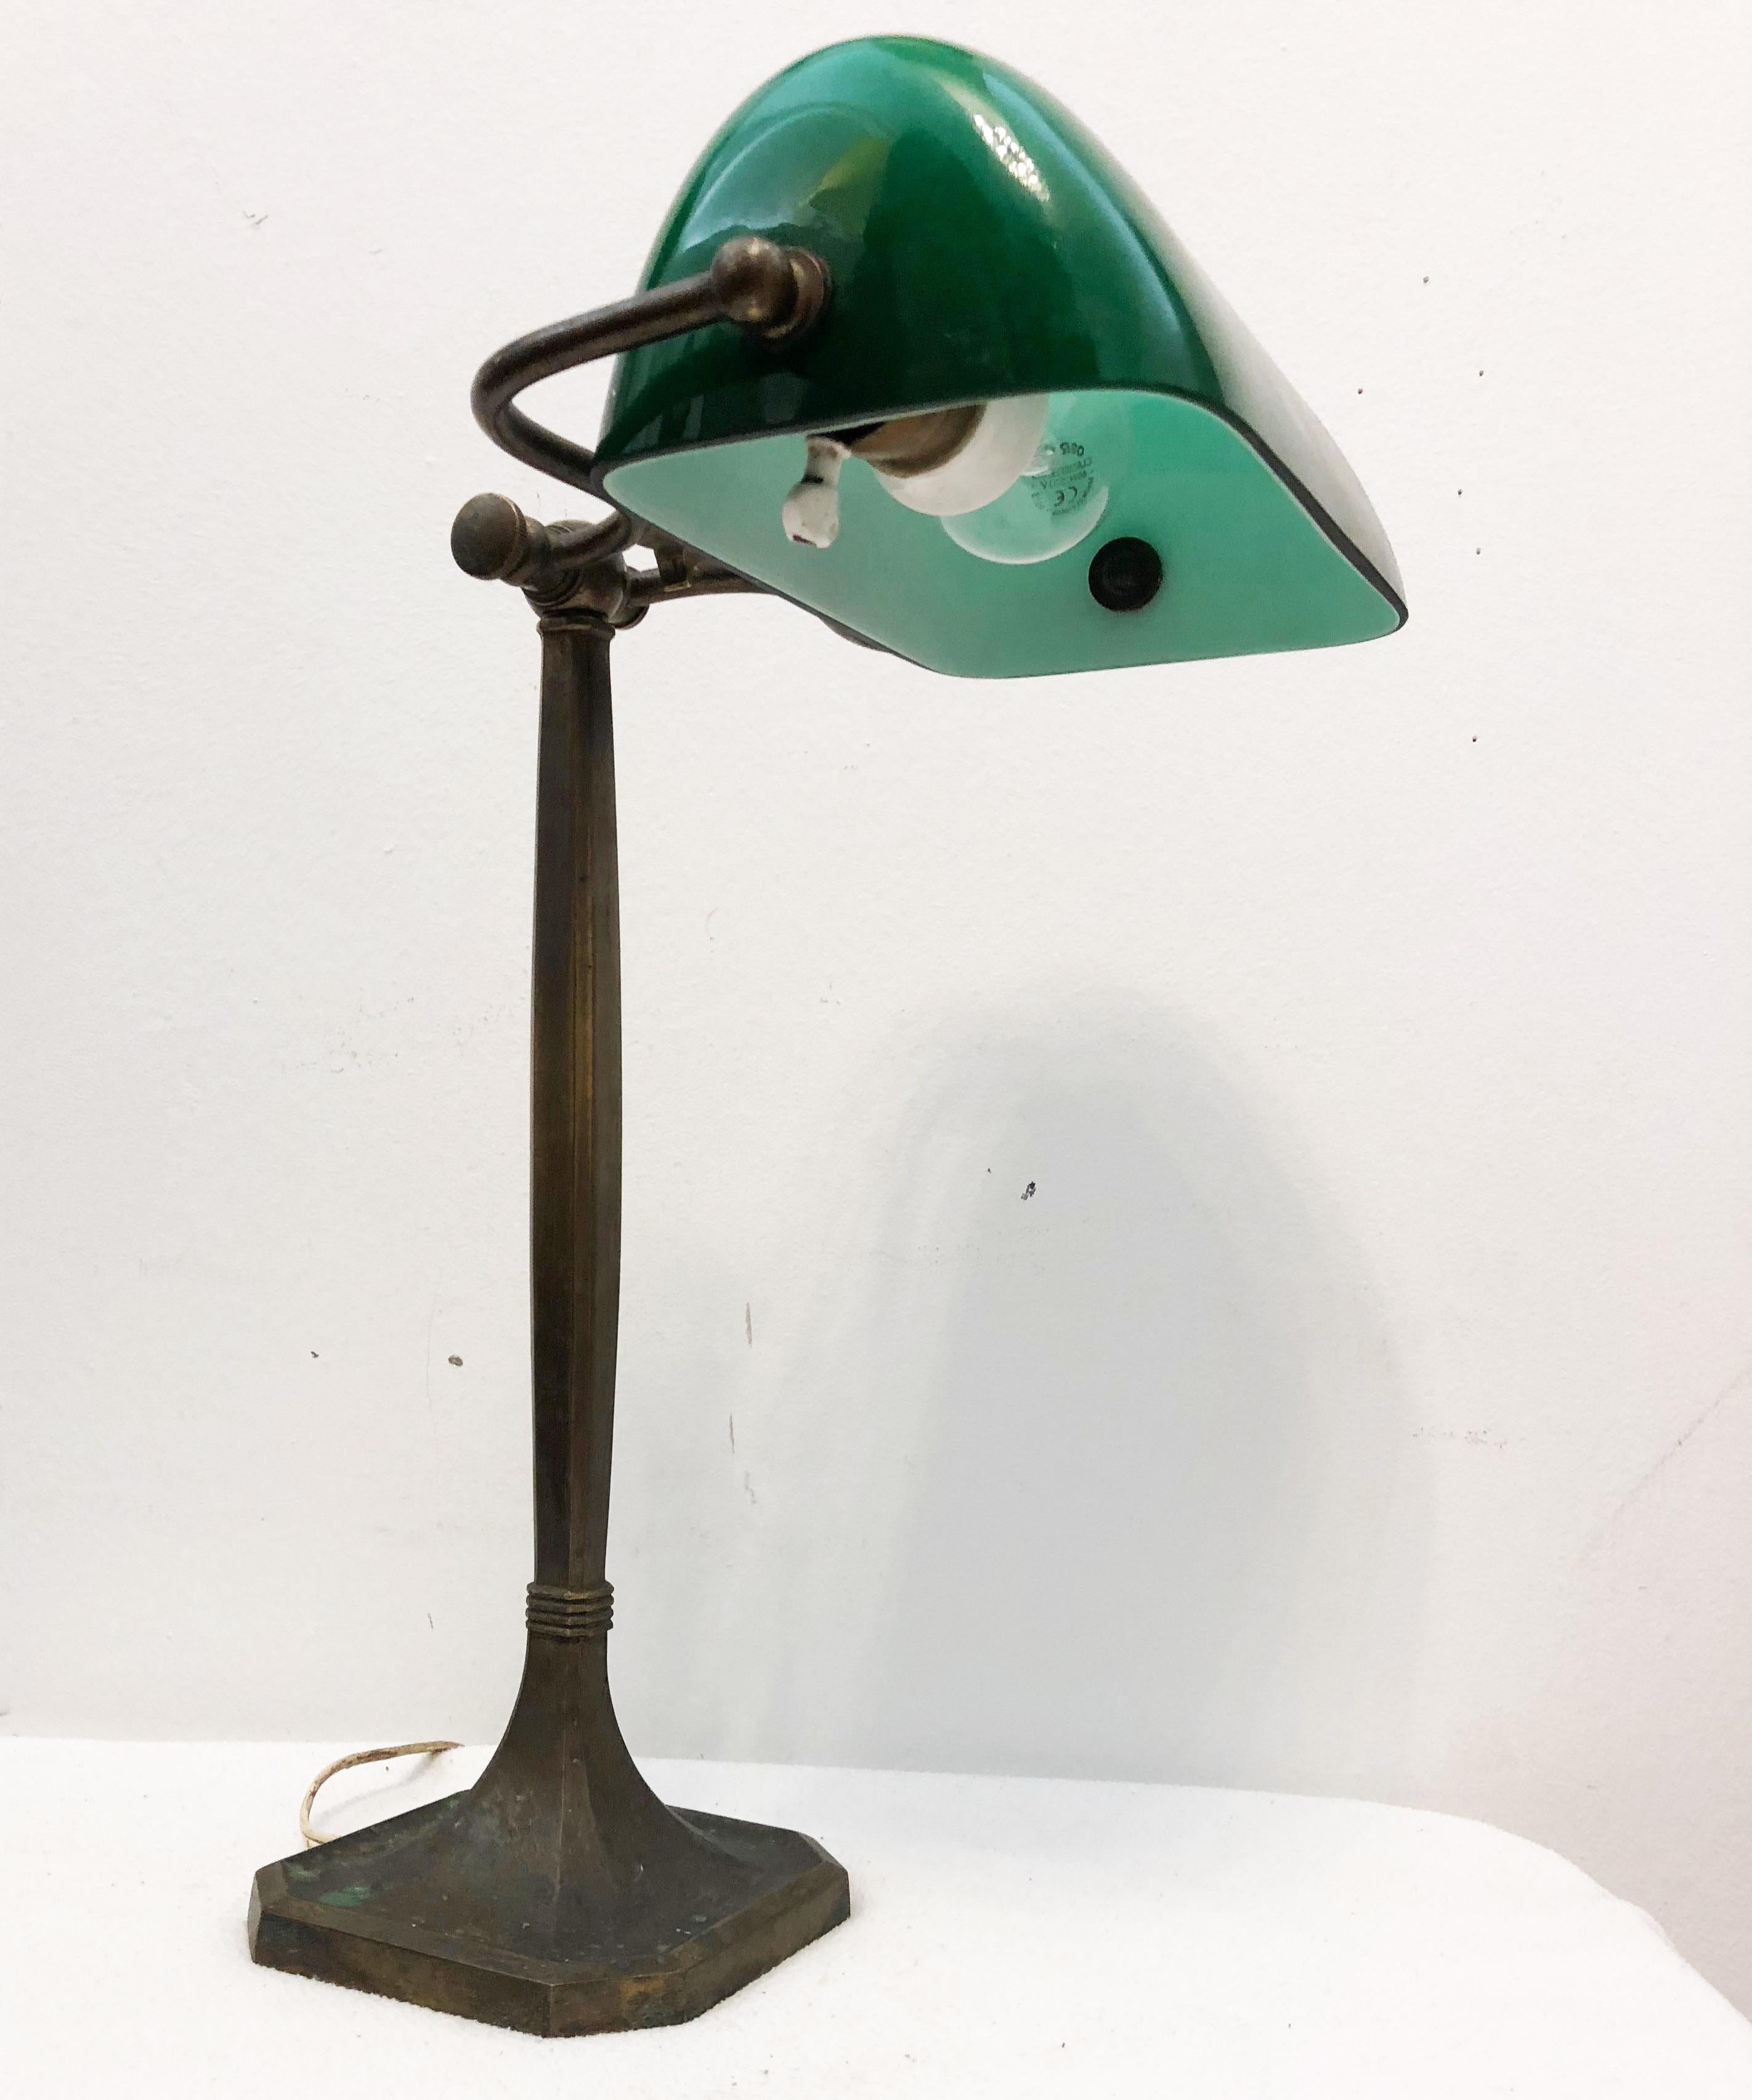 Early 20th Century Art Nouveau Desk Banker's Lamp